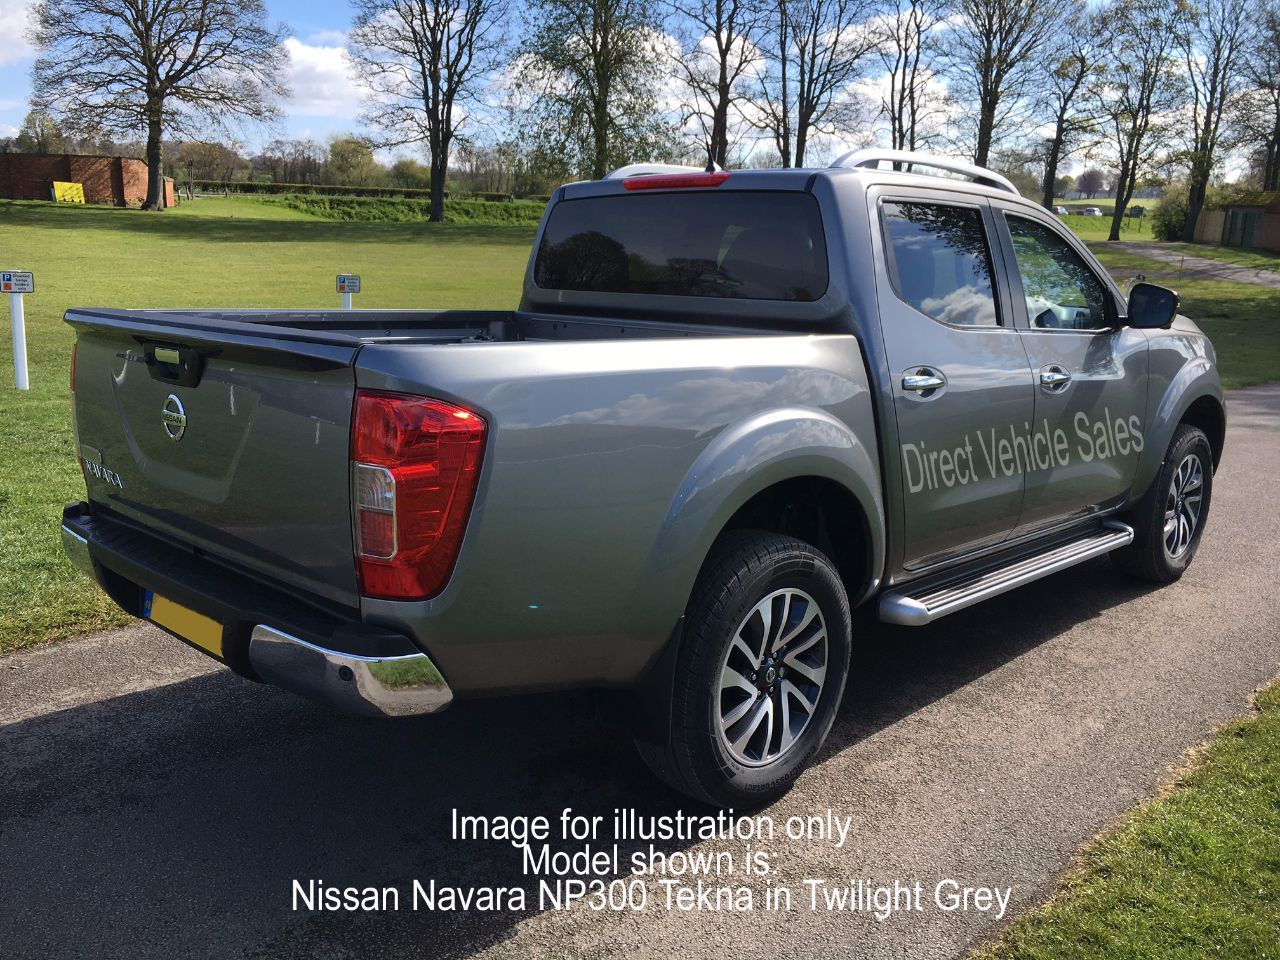 Nissan dealer north yorkshire #3